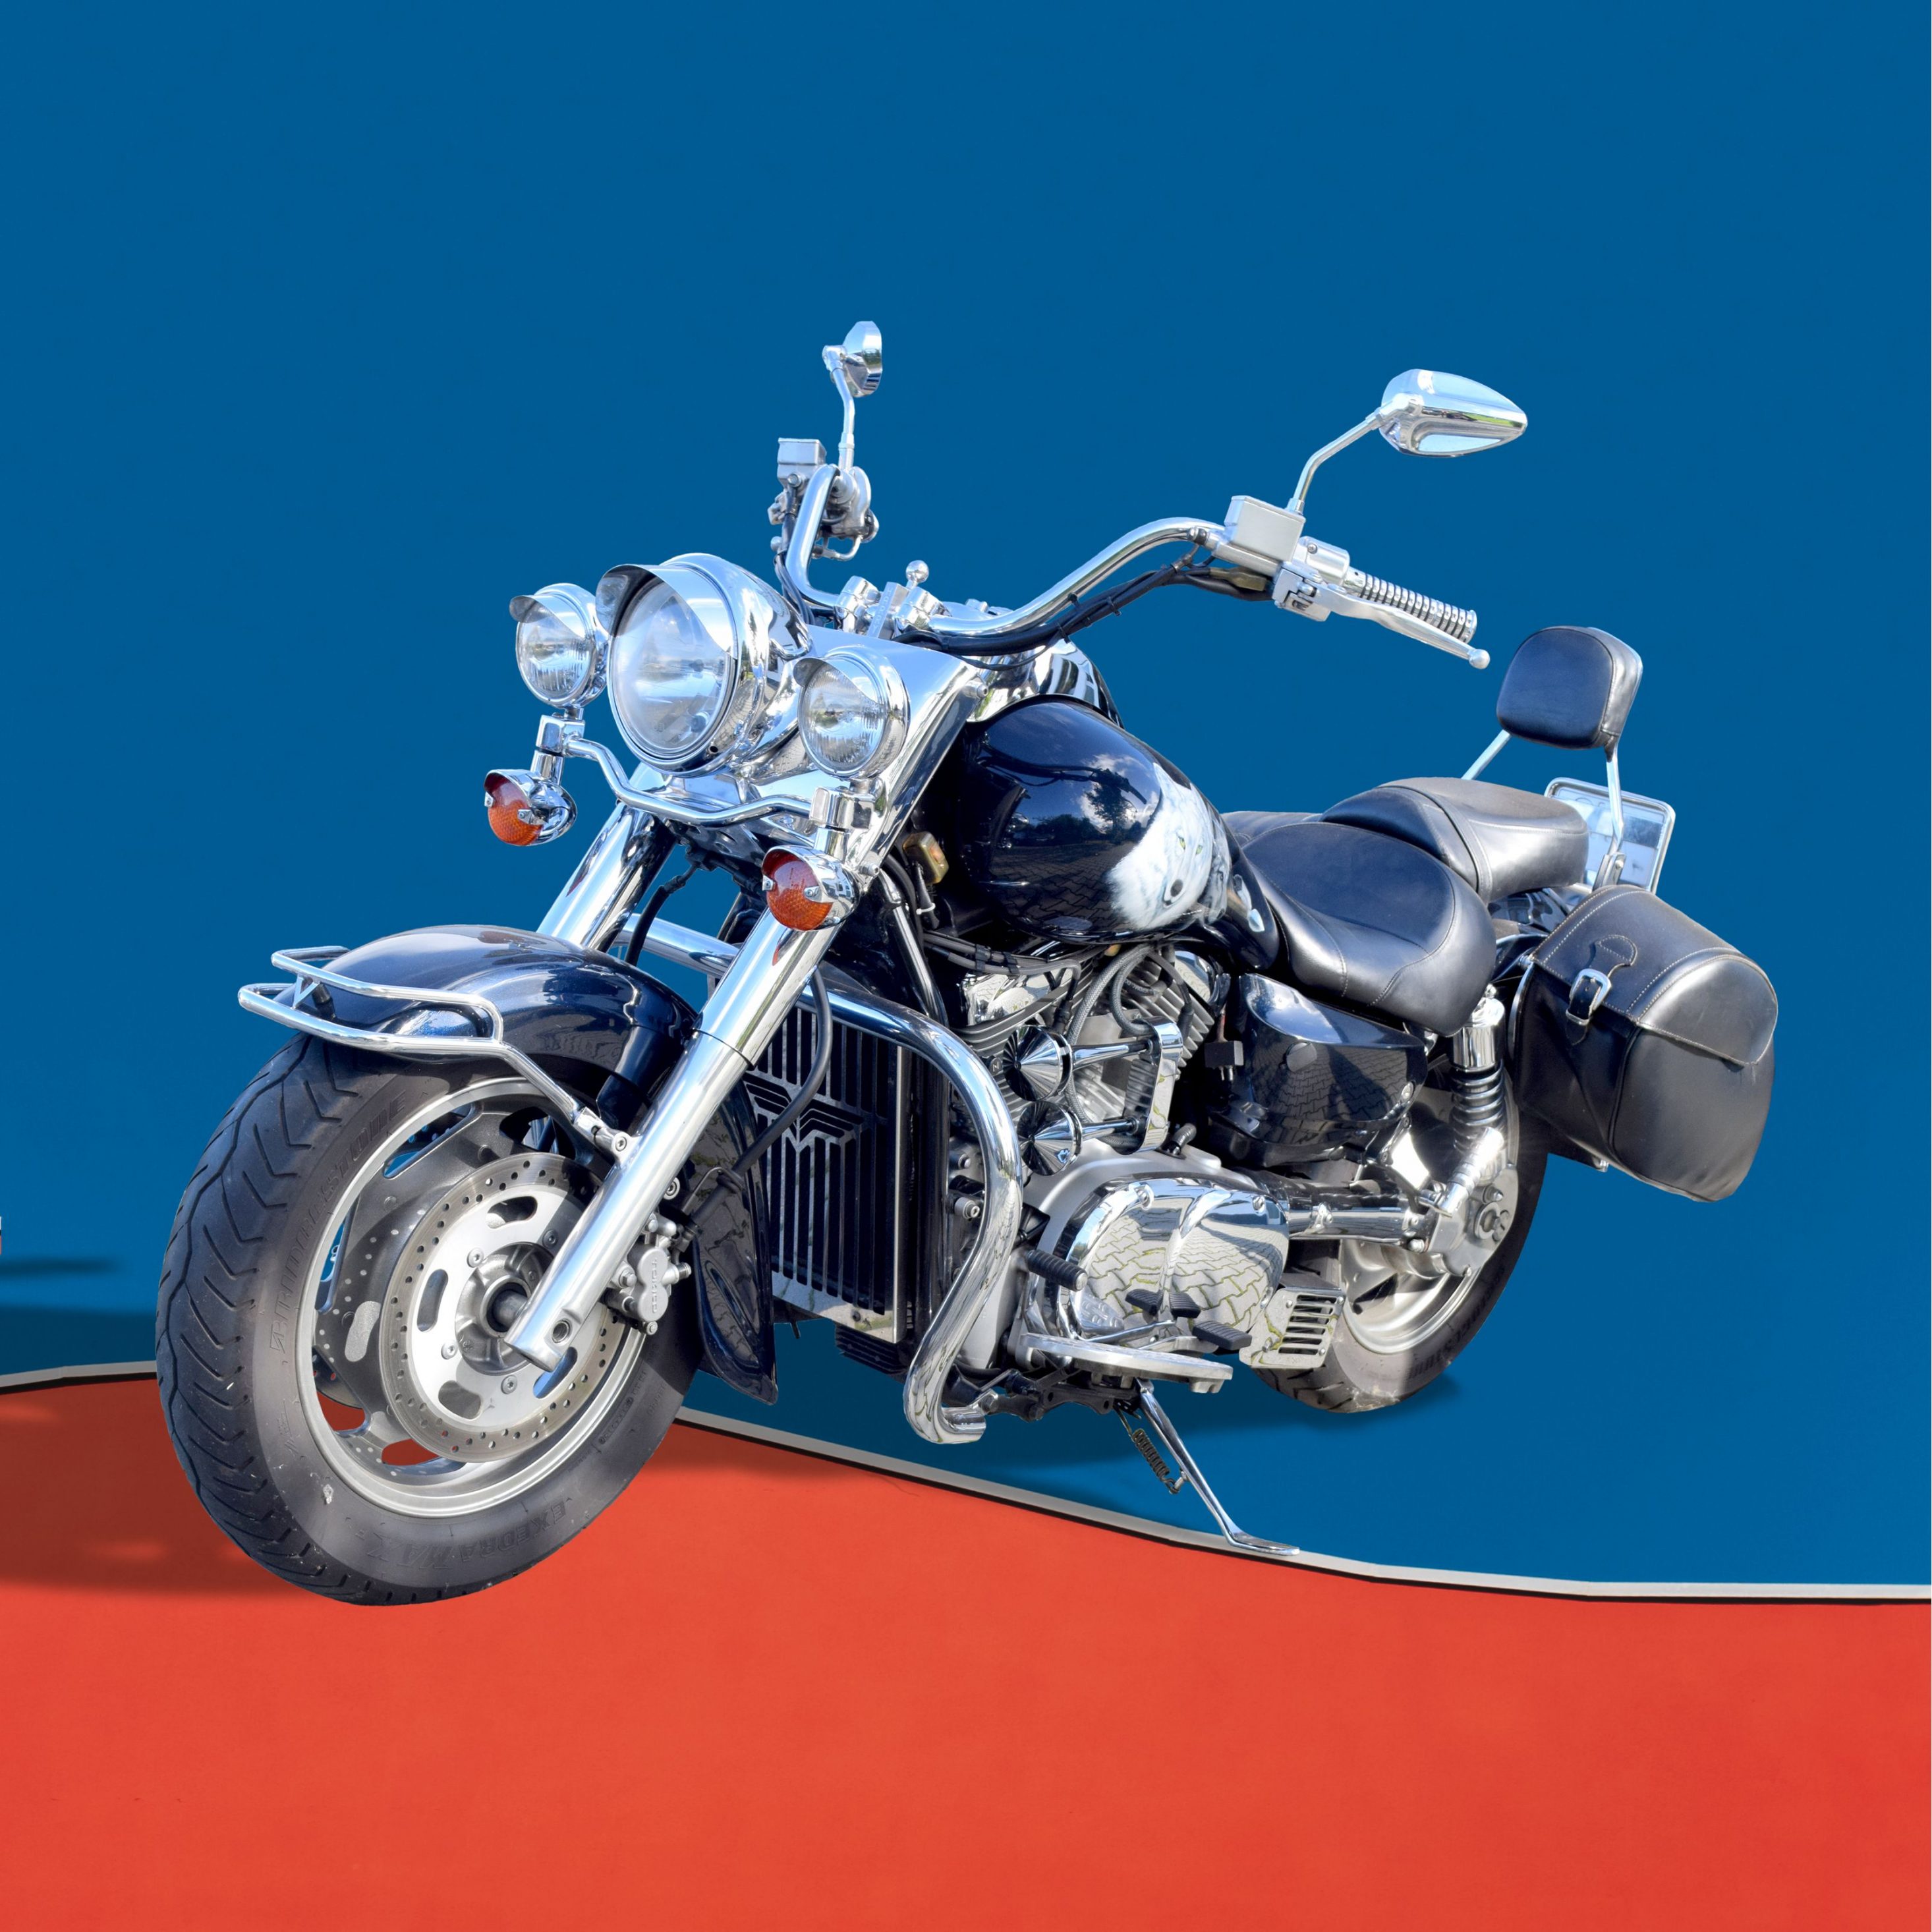 2932x2932 iPad Pro wallpaper 4k Motorbike Blue Dividing Red Ipad Wallpaper 2932x2932 pixels resolution